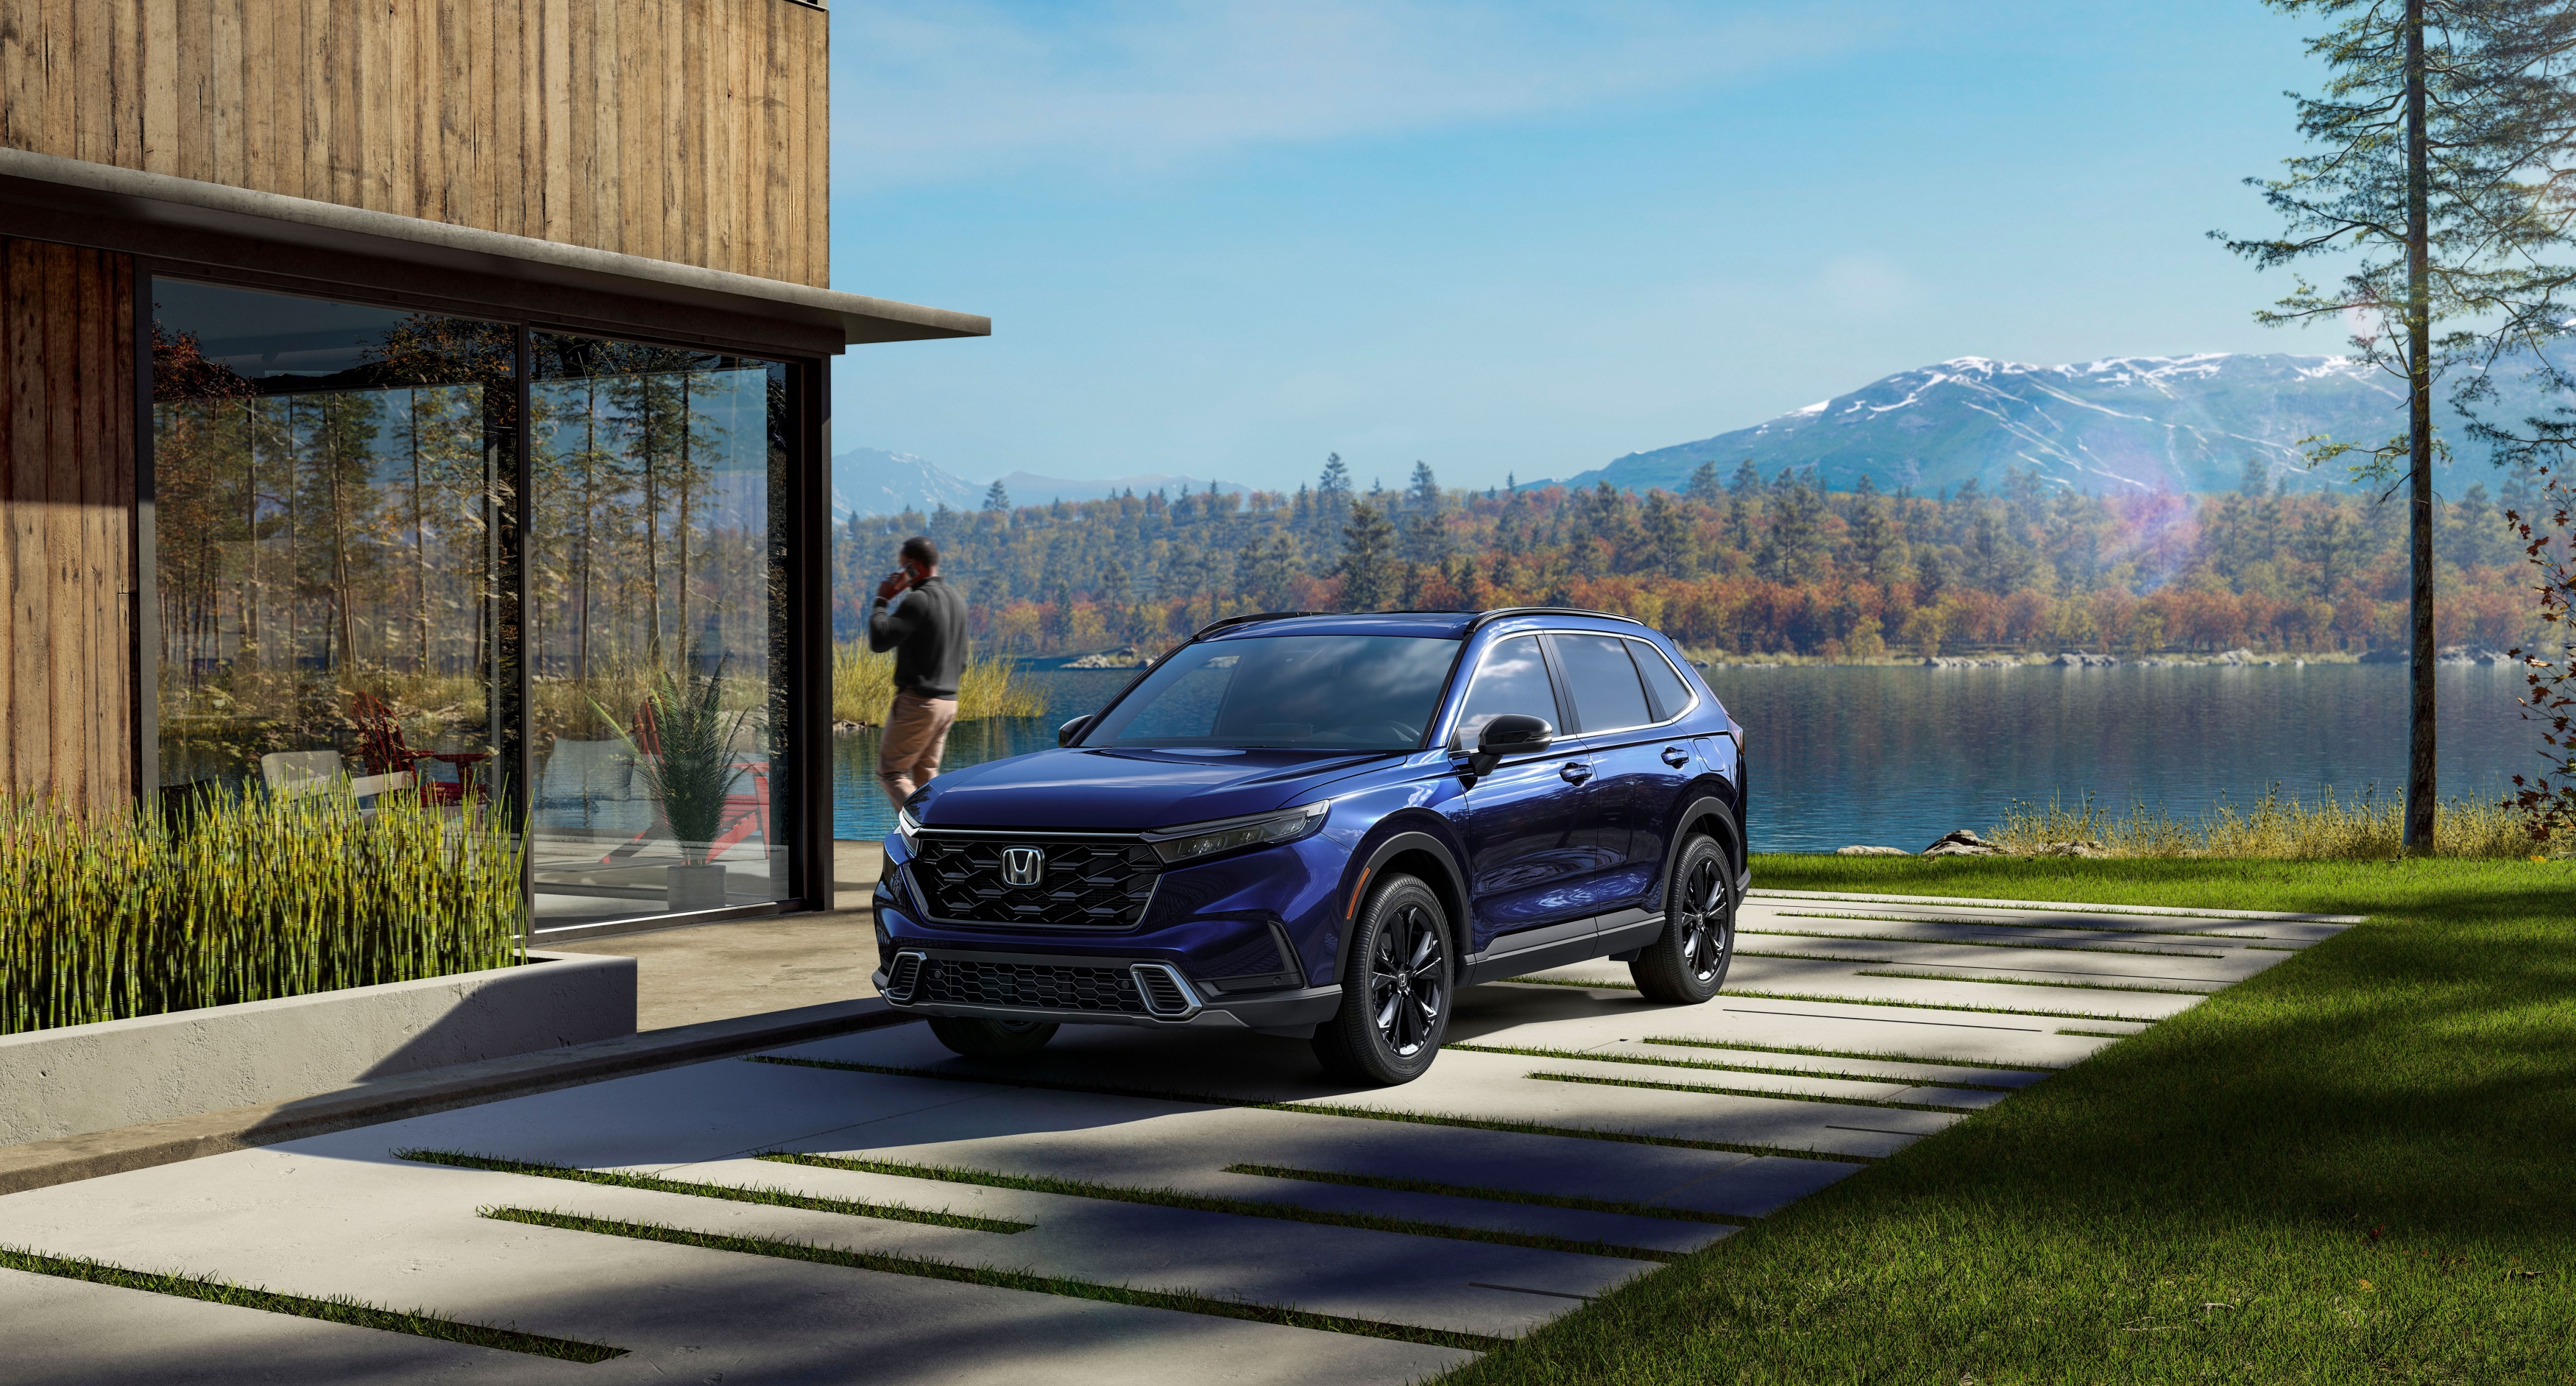 Honda Releases Details on New CR-V